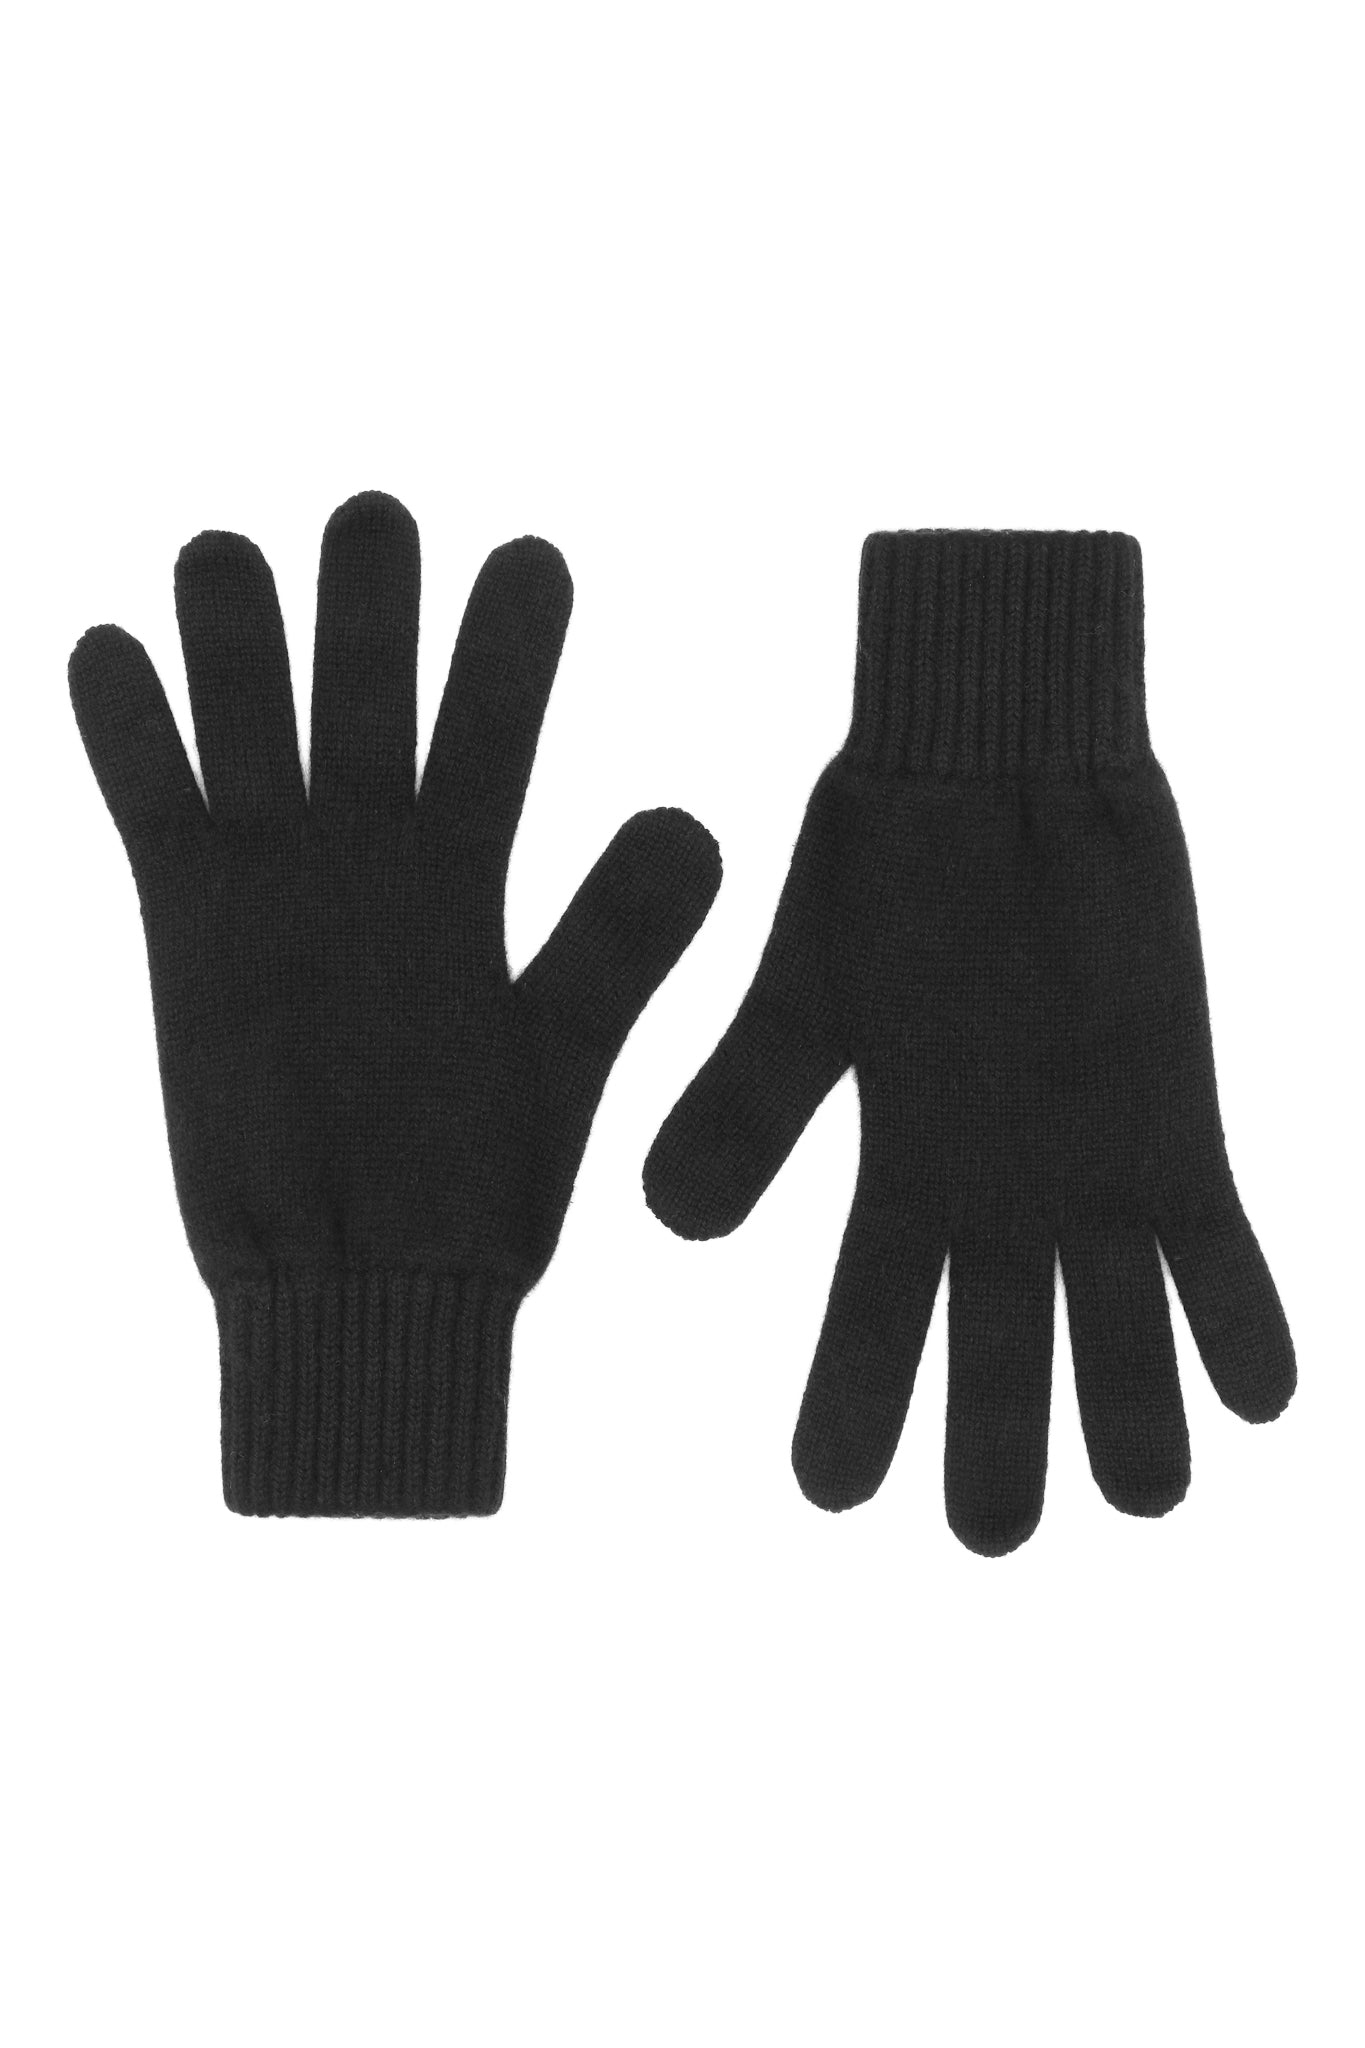 Handsker til mænd i strikket cashmere, fra Skotland - Sorte